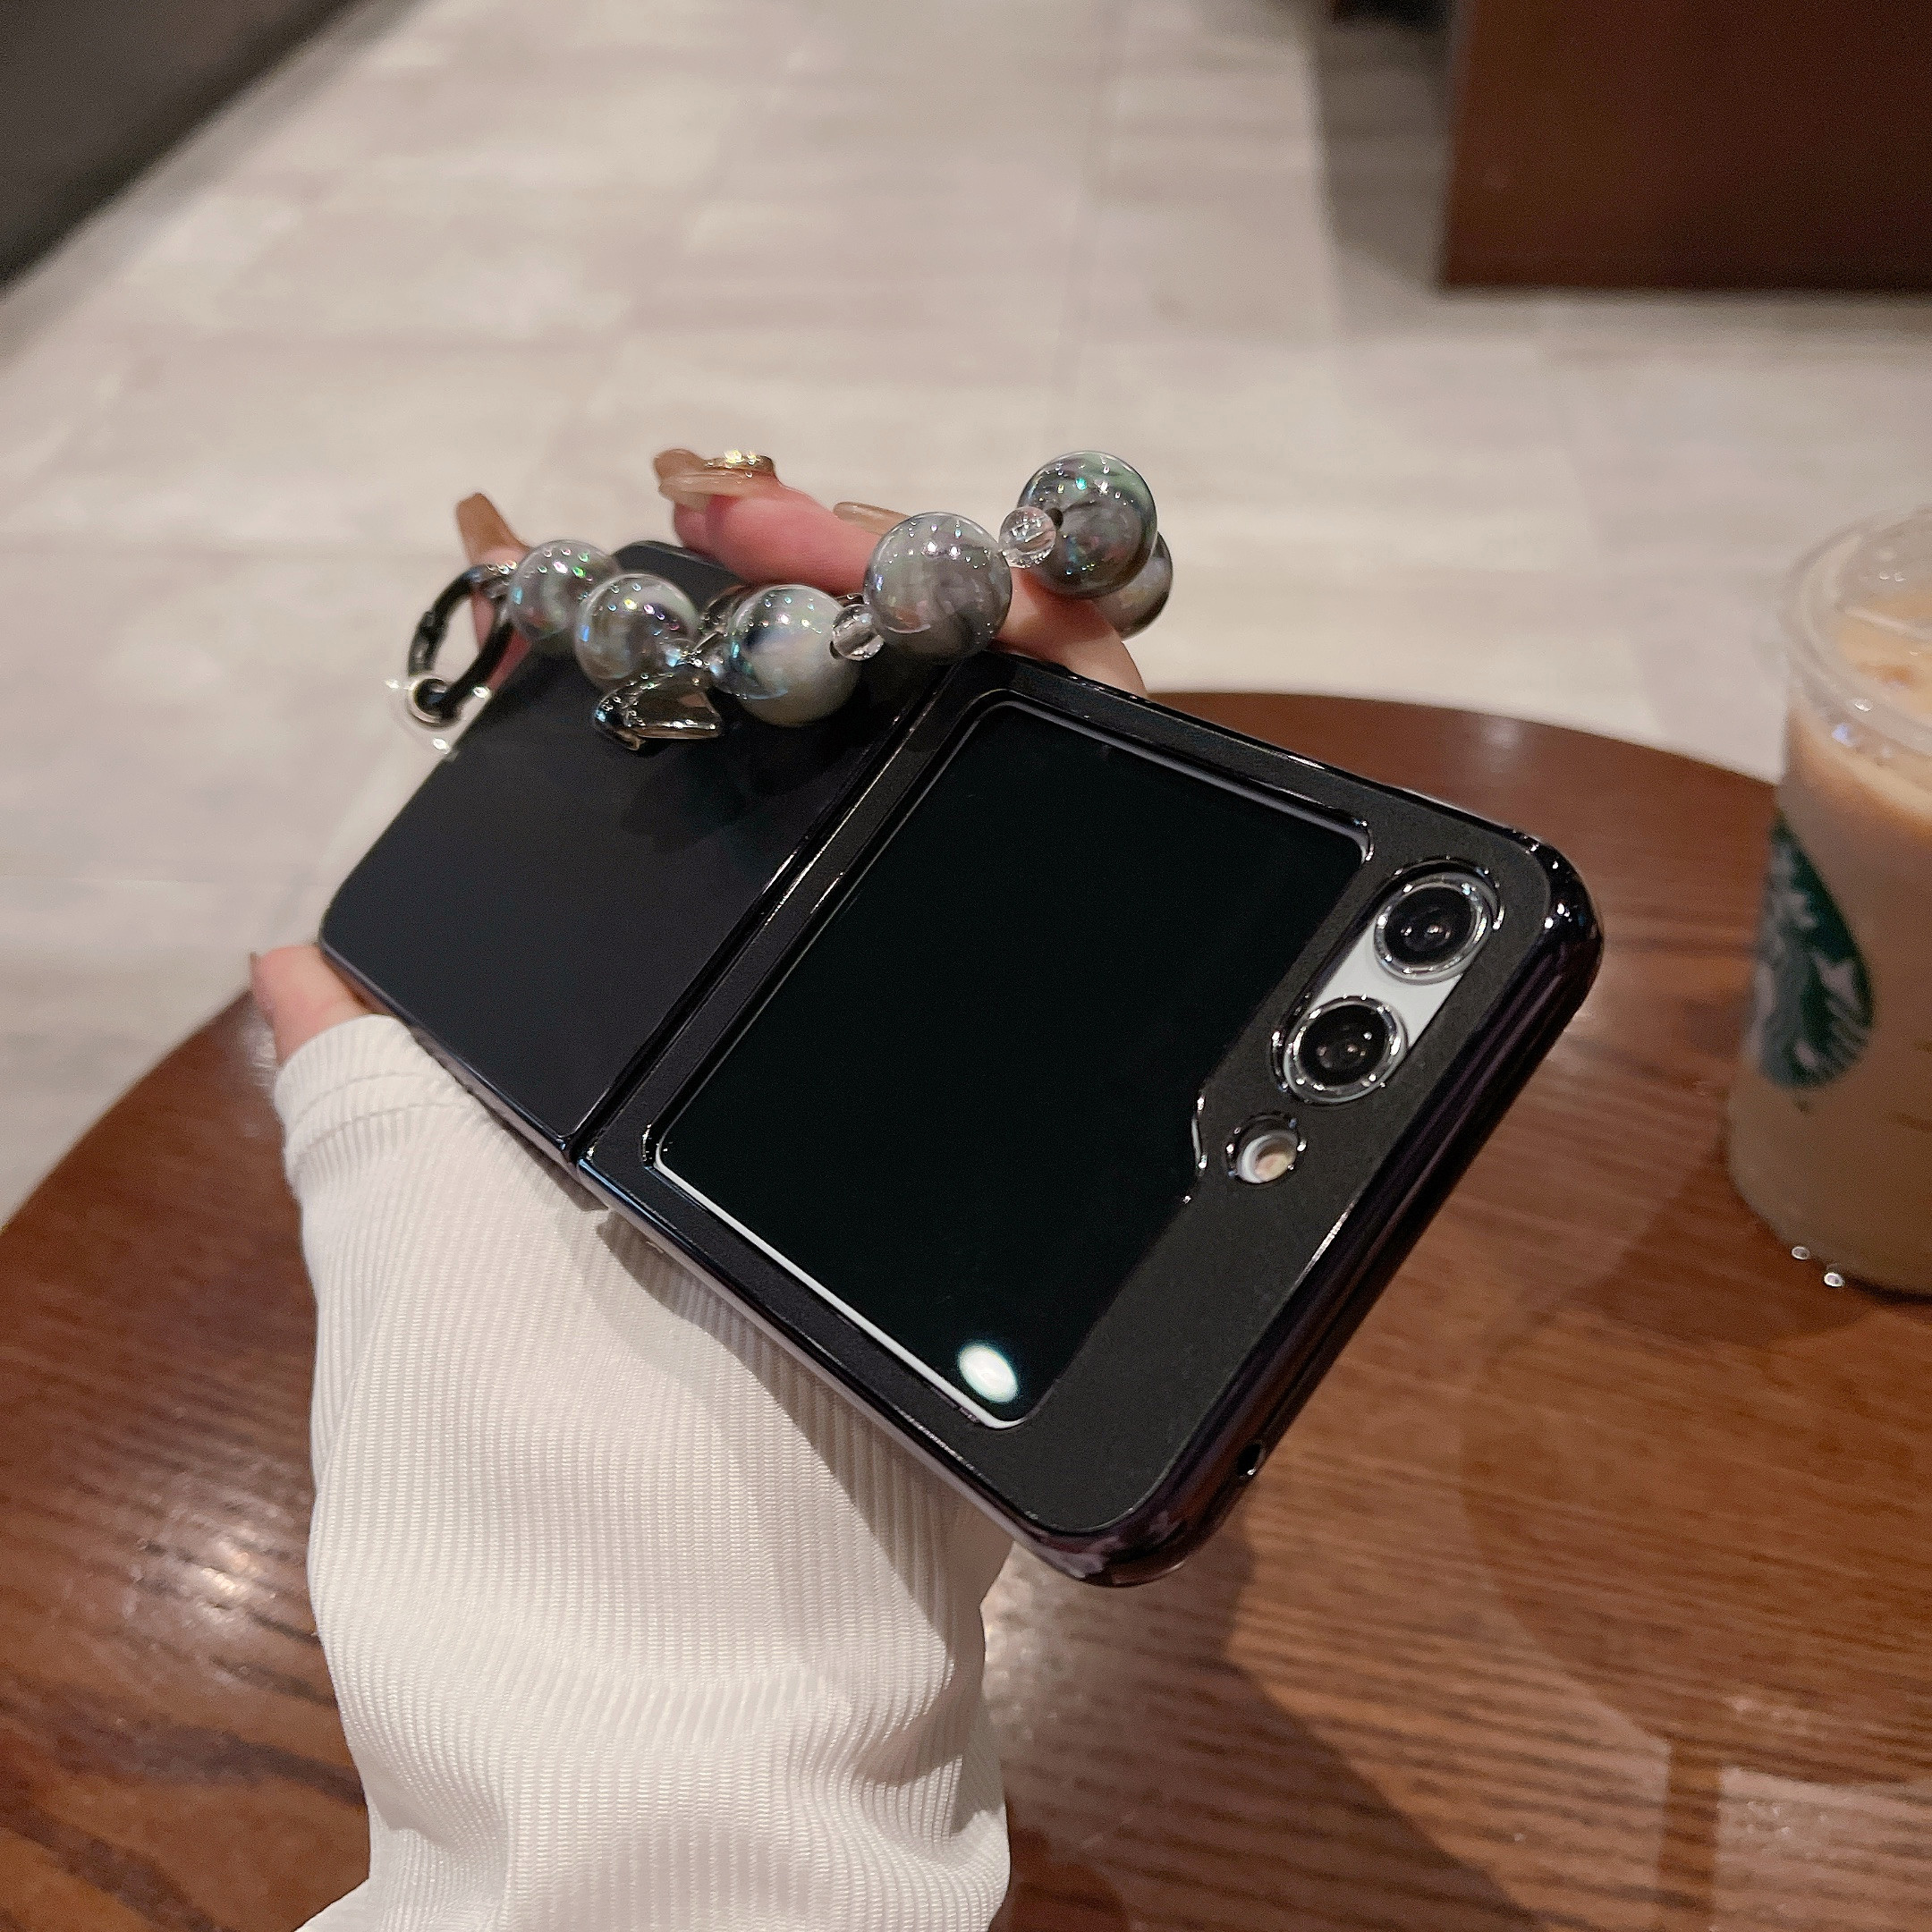 Leather Case Compatible Samsung Z Flip 3 With Ring Holder & Magnetic Hinge,  Plating Z Flip 3 Case Kickstand